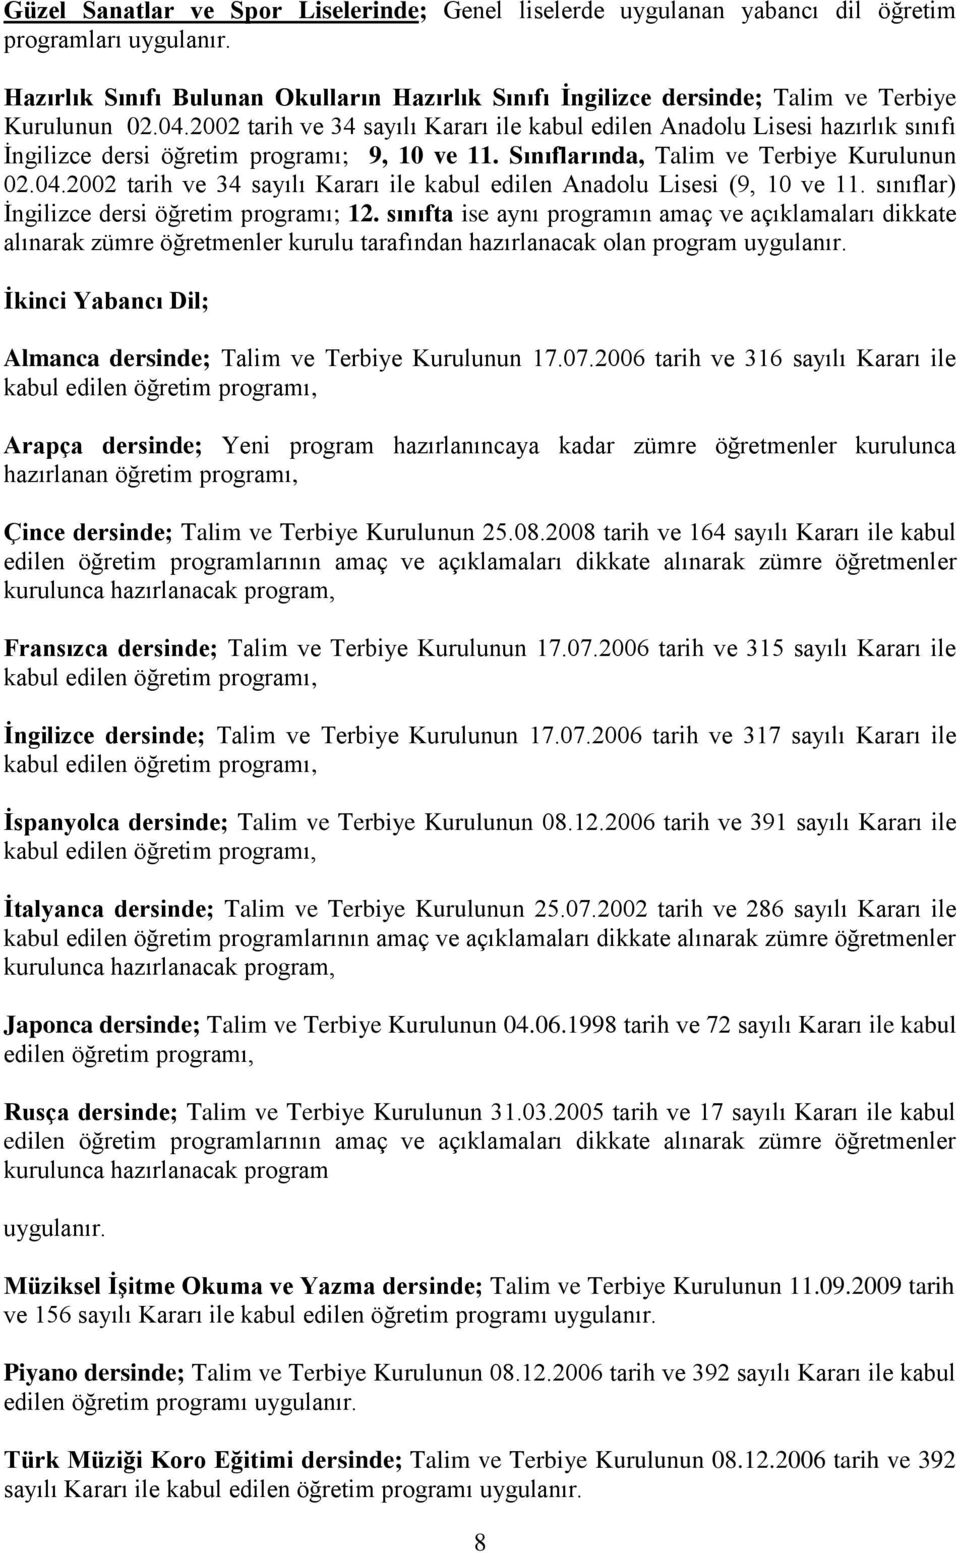 2002 tarih ve 34 sayılı Kararı ile kabul edilen Anadolu Lisesi (9, 10 ve 11. sınıflar) İngilizce dersi öğretim programı; 12.